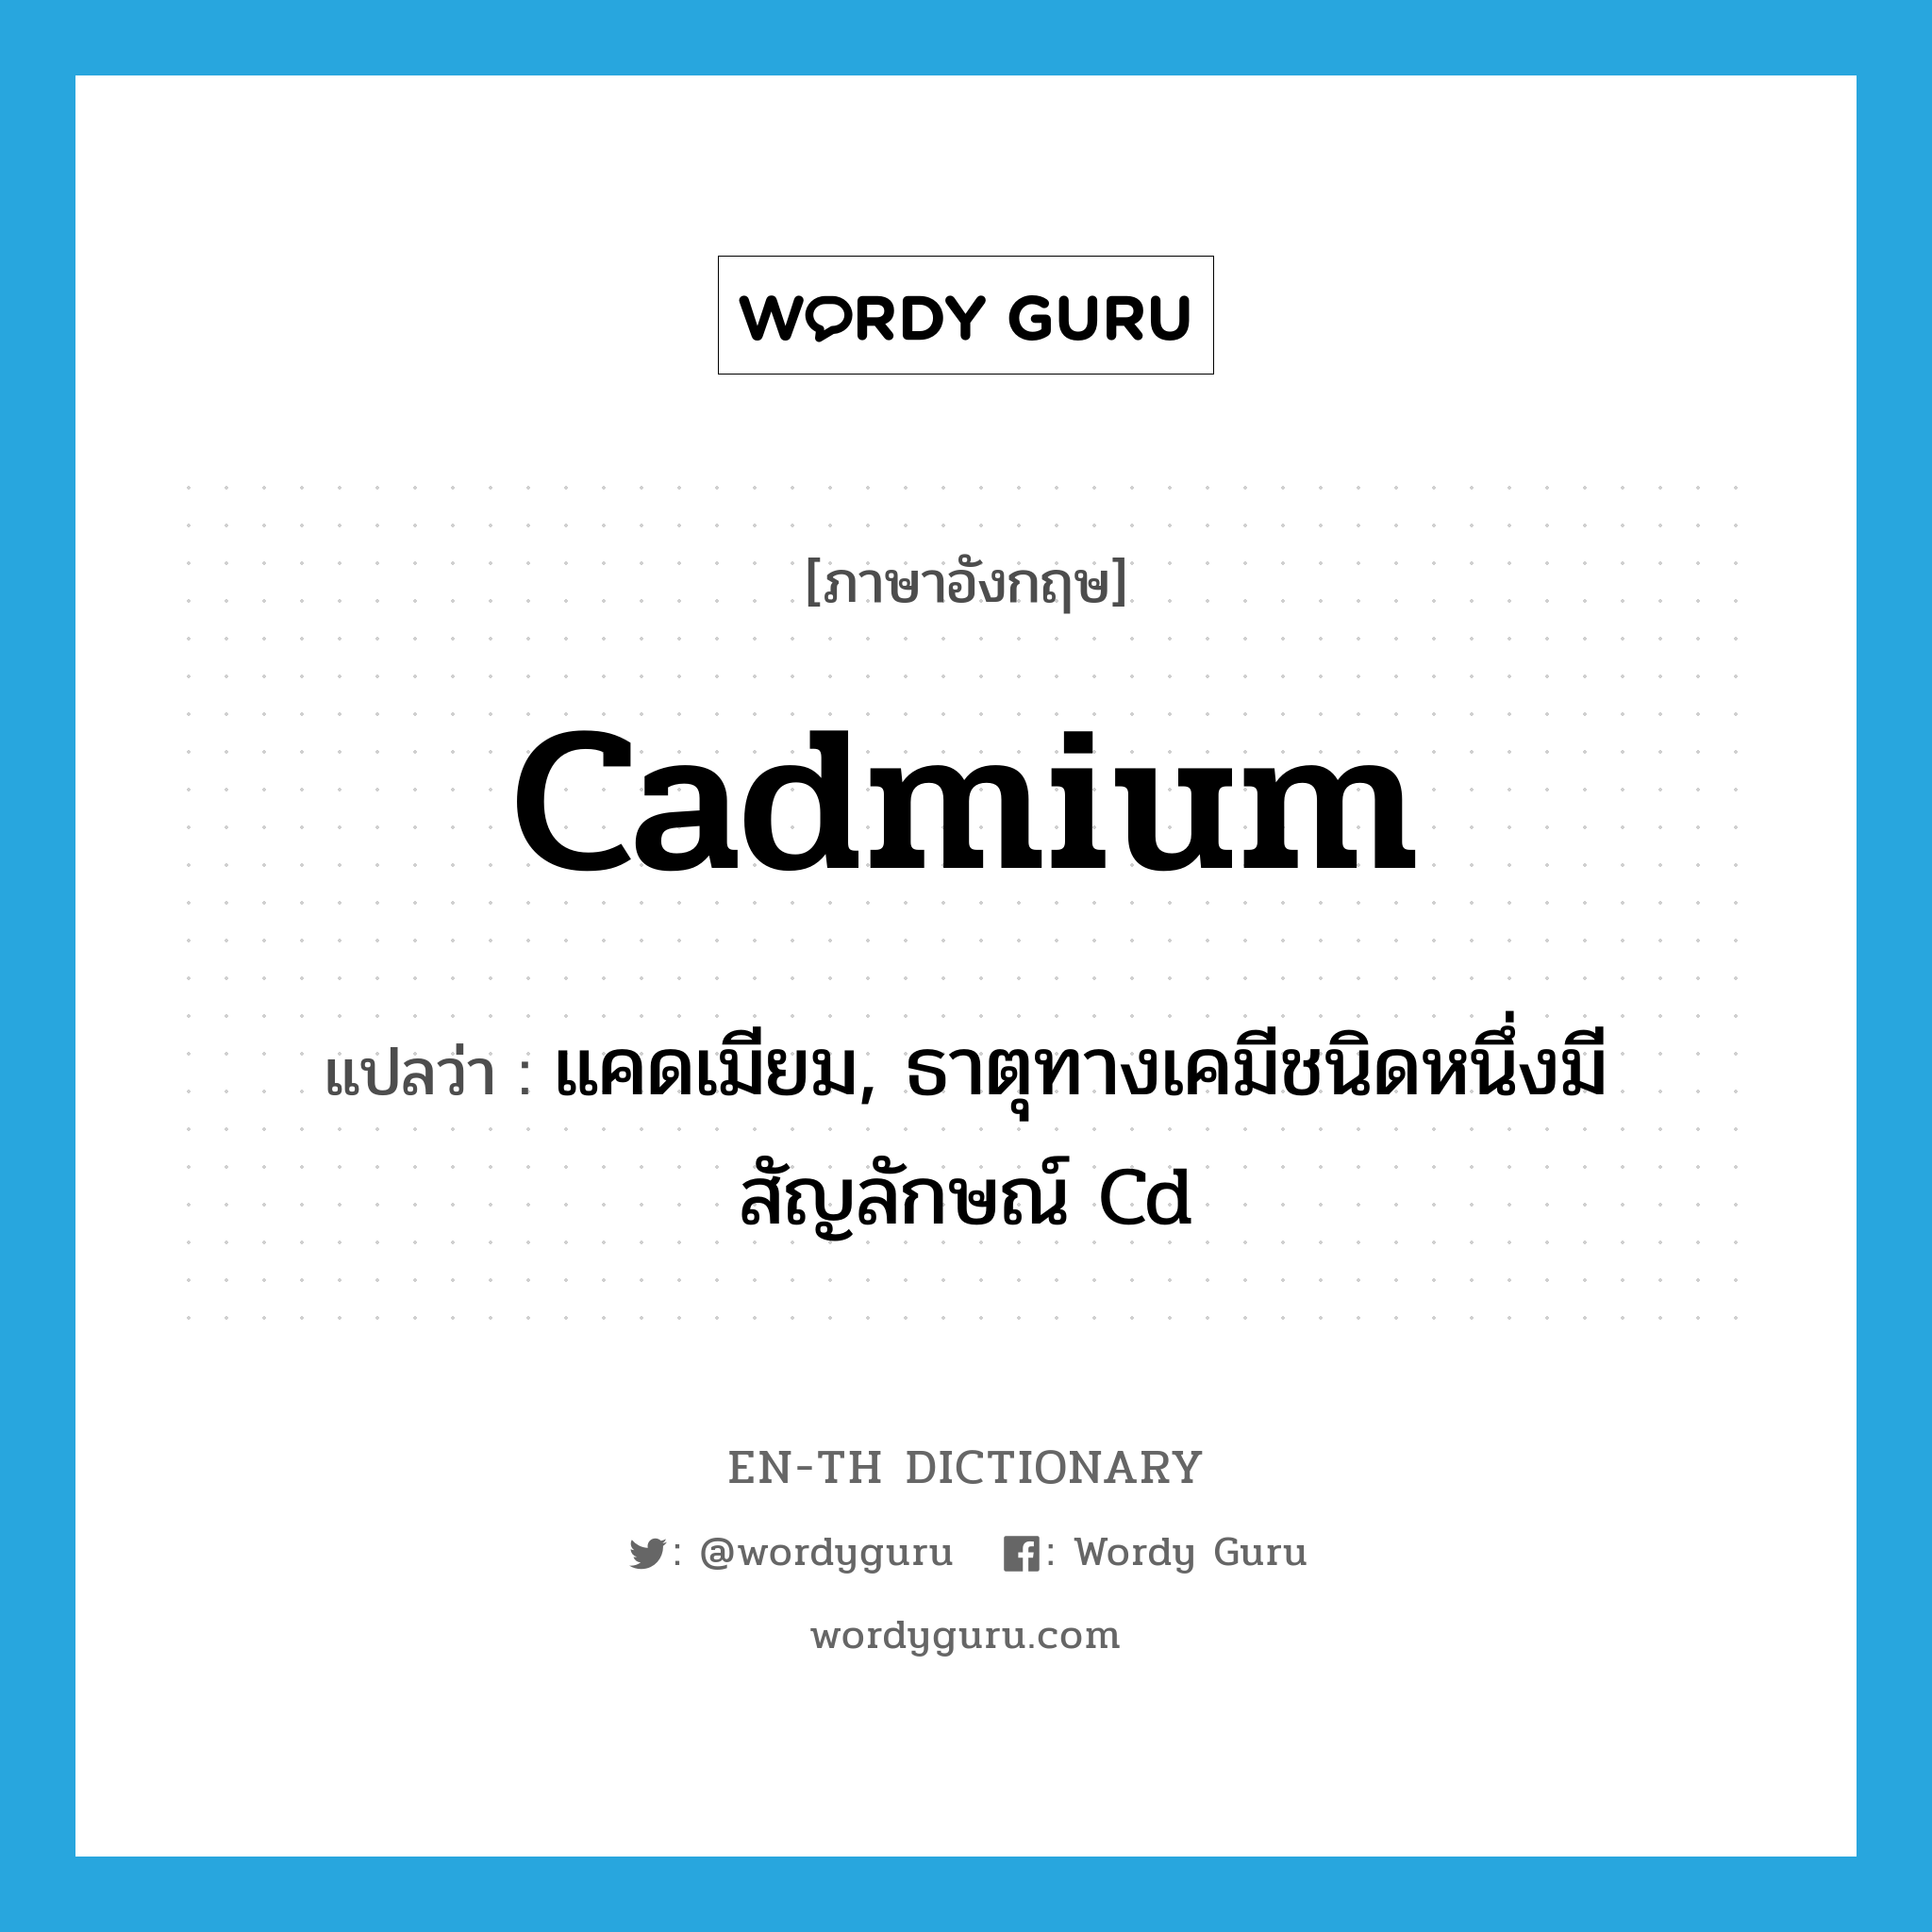 แคดเมียม, ธาตุทางเคมีชนิดหนึ่งมีสัญลักษณ์ Cd ภาษาอังกฤษ?, คำศัพท์ภาษาอังกฤษ แคดเมียม, ธาตุทางเคมีชนิดหนึ่งมีสัญลักษณ์ Cd แปลว่า cadmium ประเภท N หมวด N